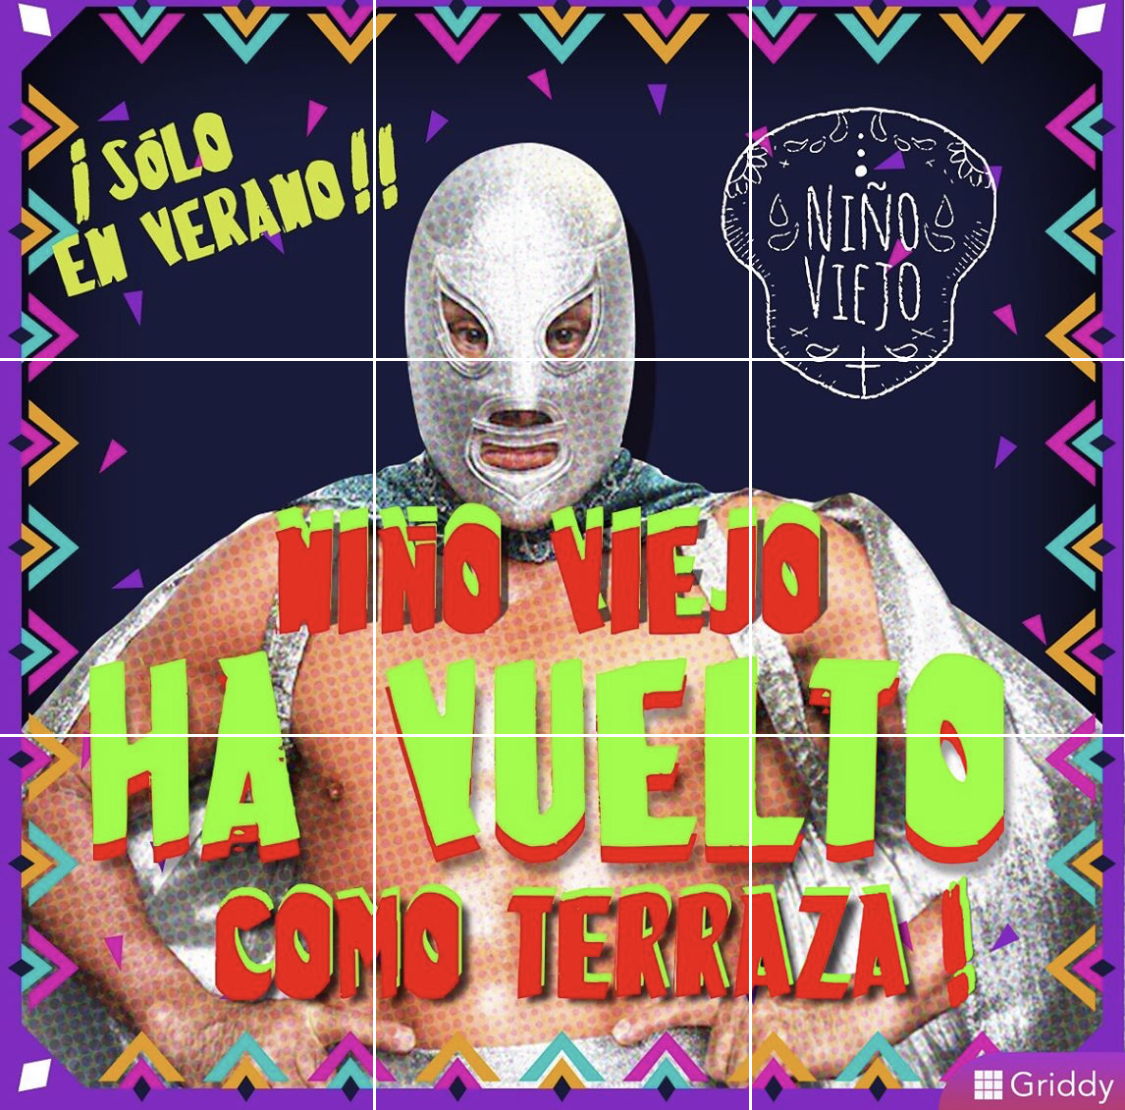 Topnieuws: Niño Viejo is back!